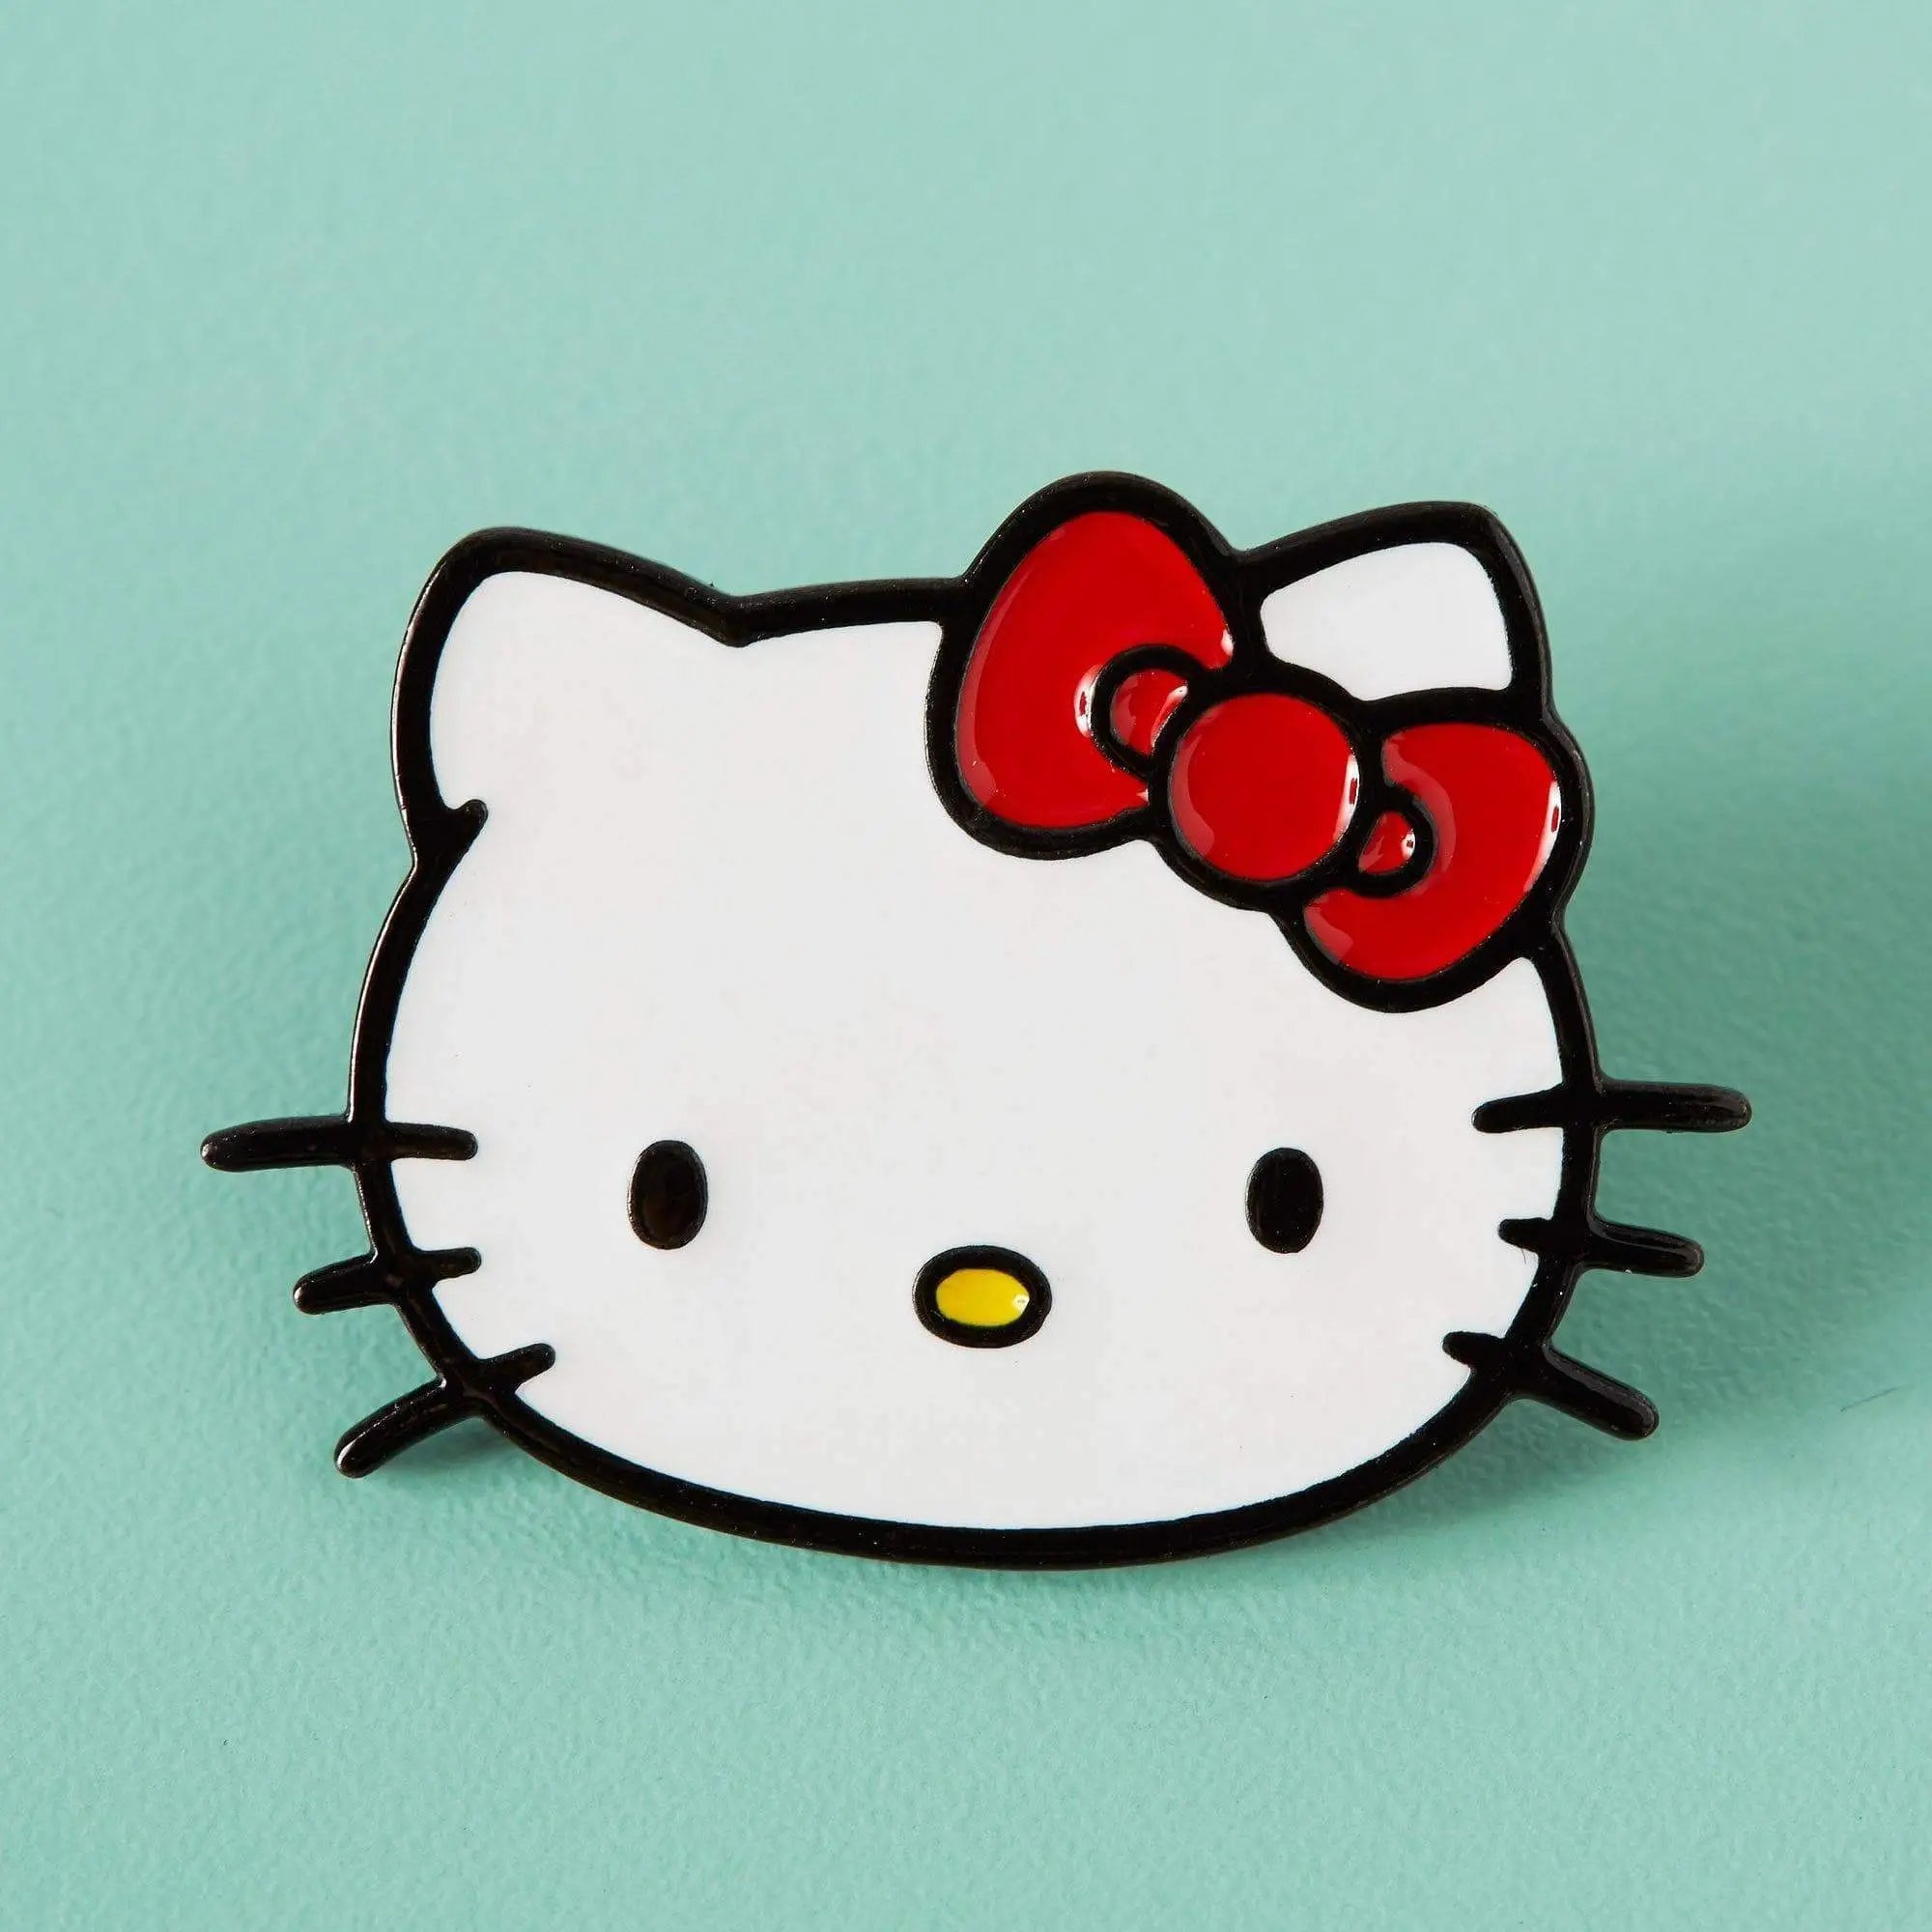 Pin on Hello Kitty